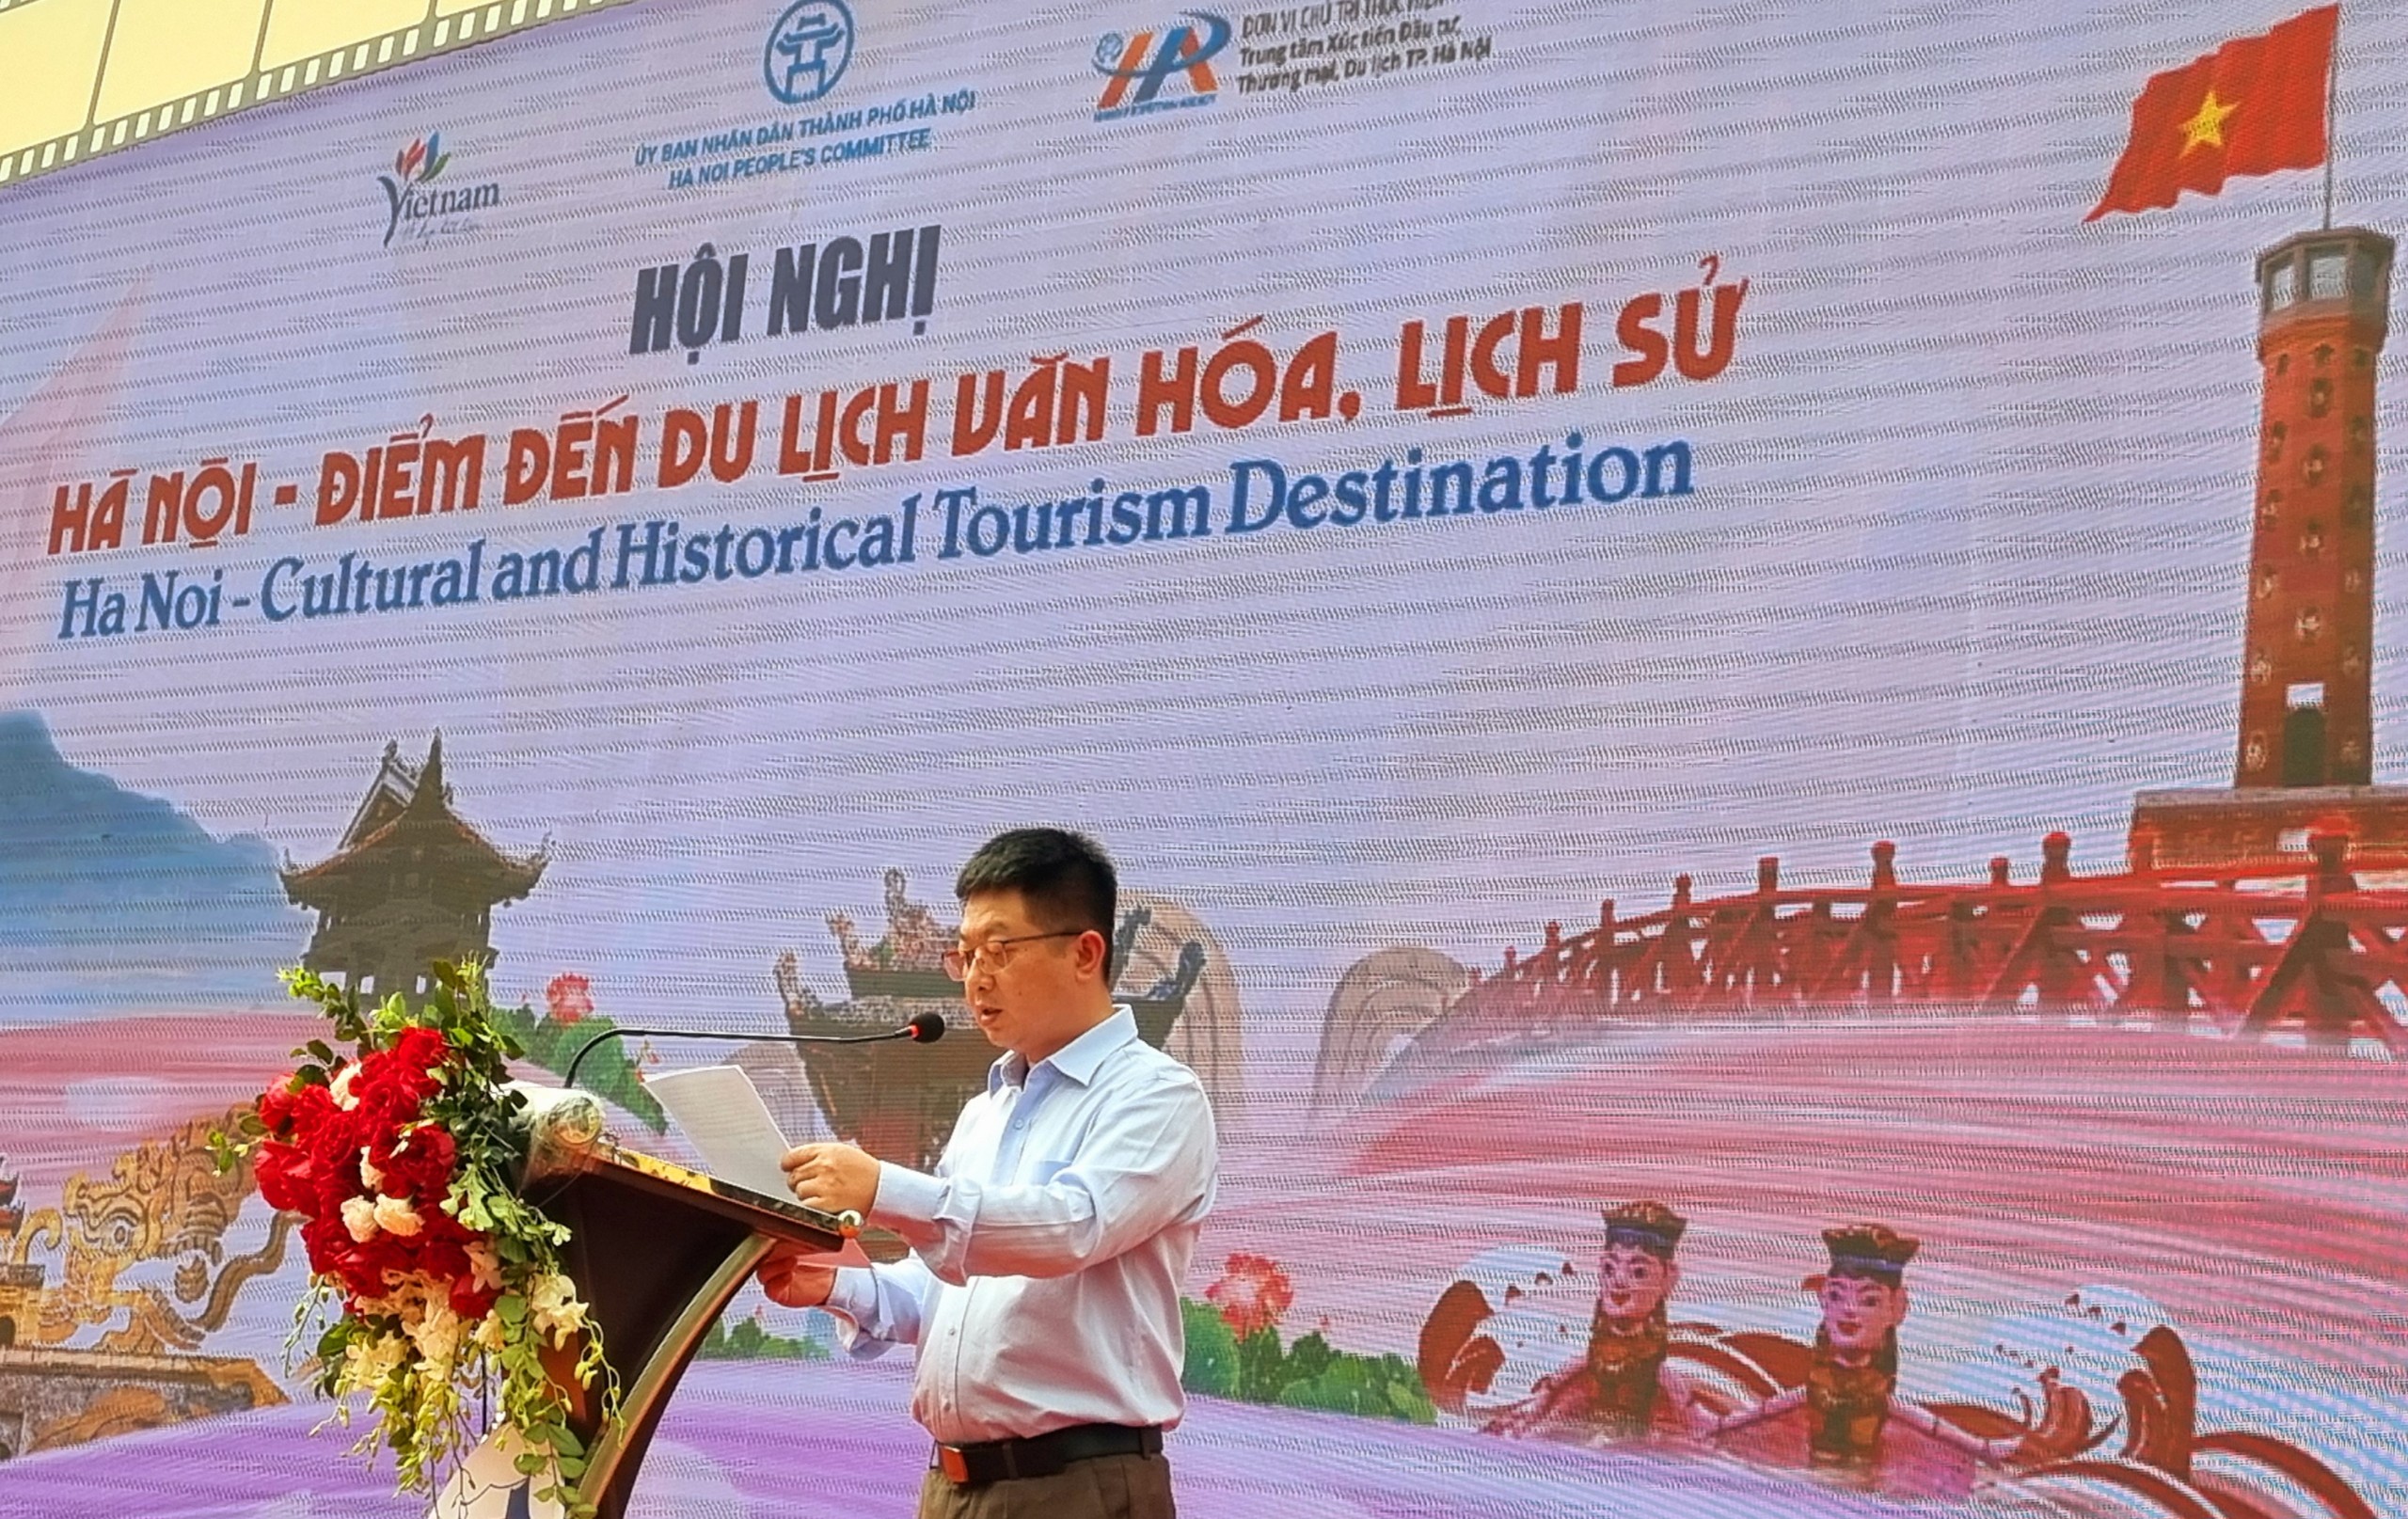 Du lịch văn hóa – lịch sử: Mở ra cơ hội phát triển cho du lịch Hà Nội - 2